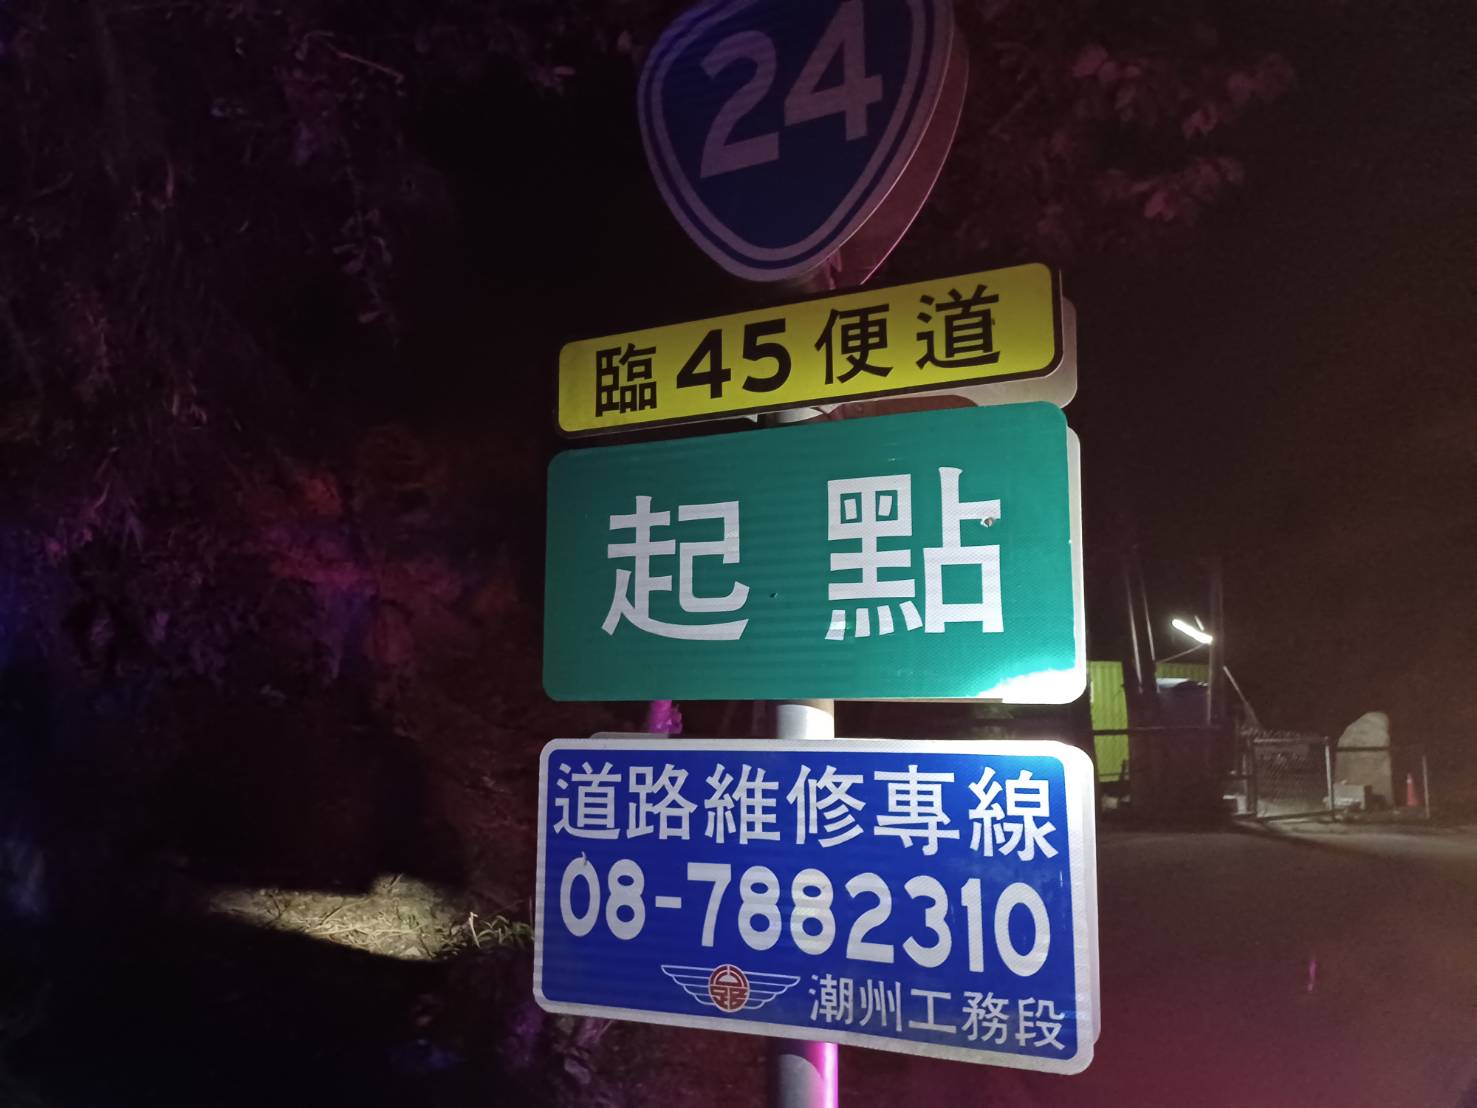 屏东县雾台乡台24线标示牌「起点」出现弹孔痕迹，警方到场初步勘验，将扩大追查。记者刘星君／翻摄